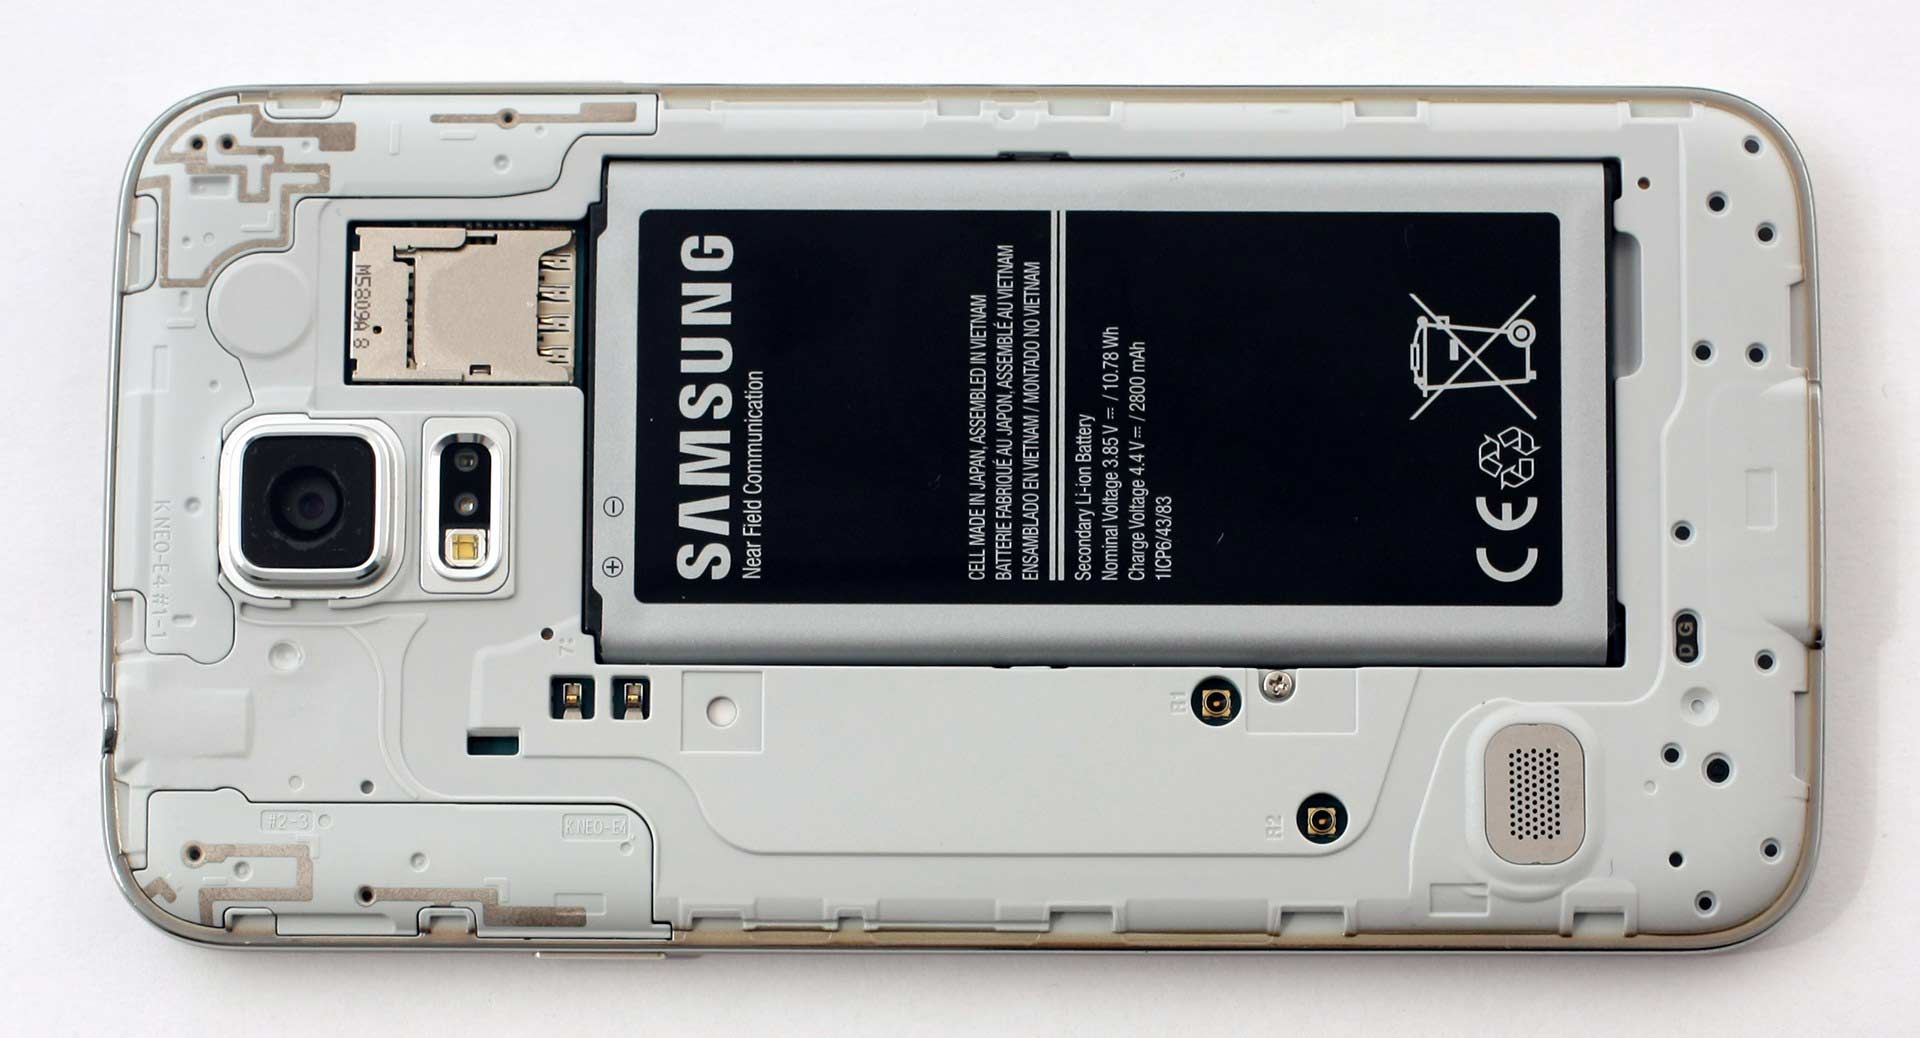  بررسی باتری سامسونگ Samsung Galaxy S5 Neo